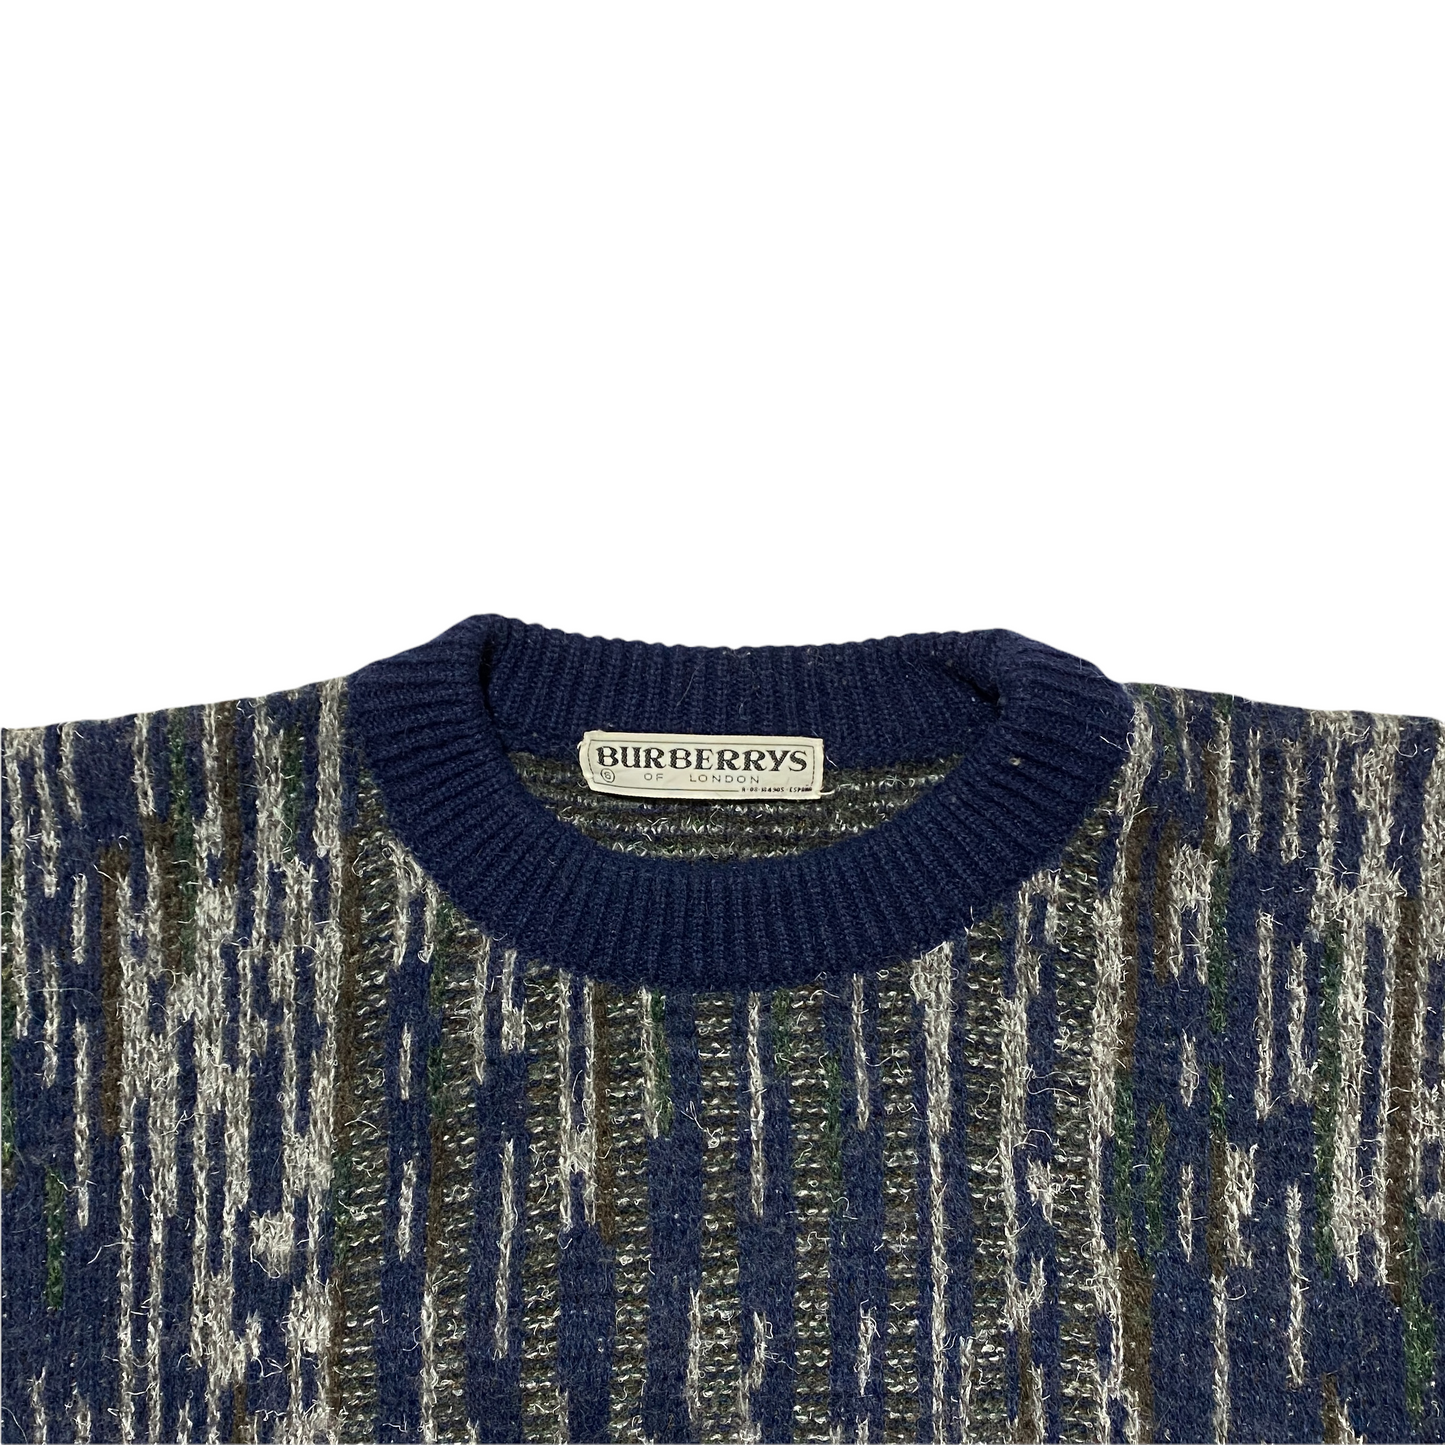 80's Burberrys Knit Jersey (L)